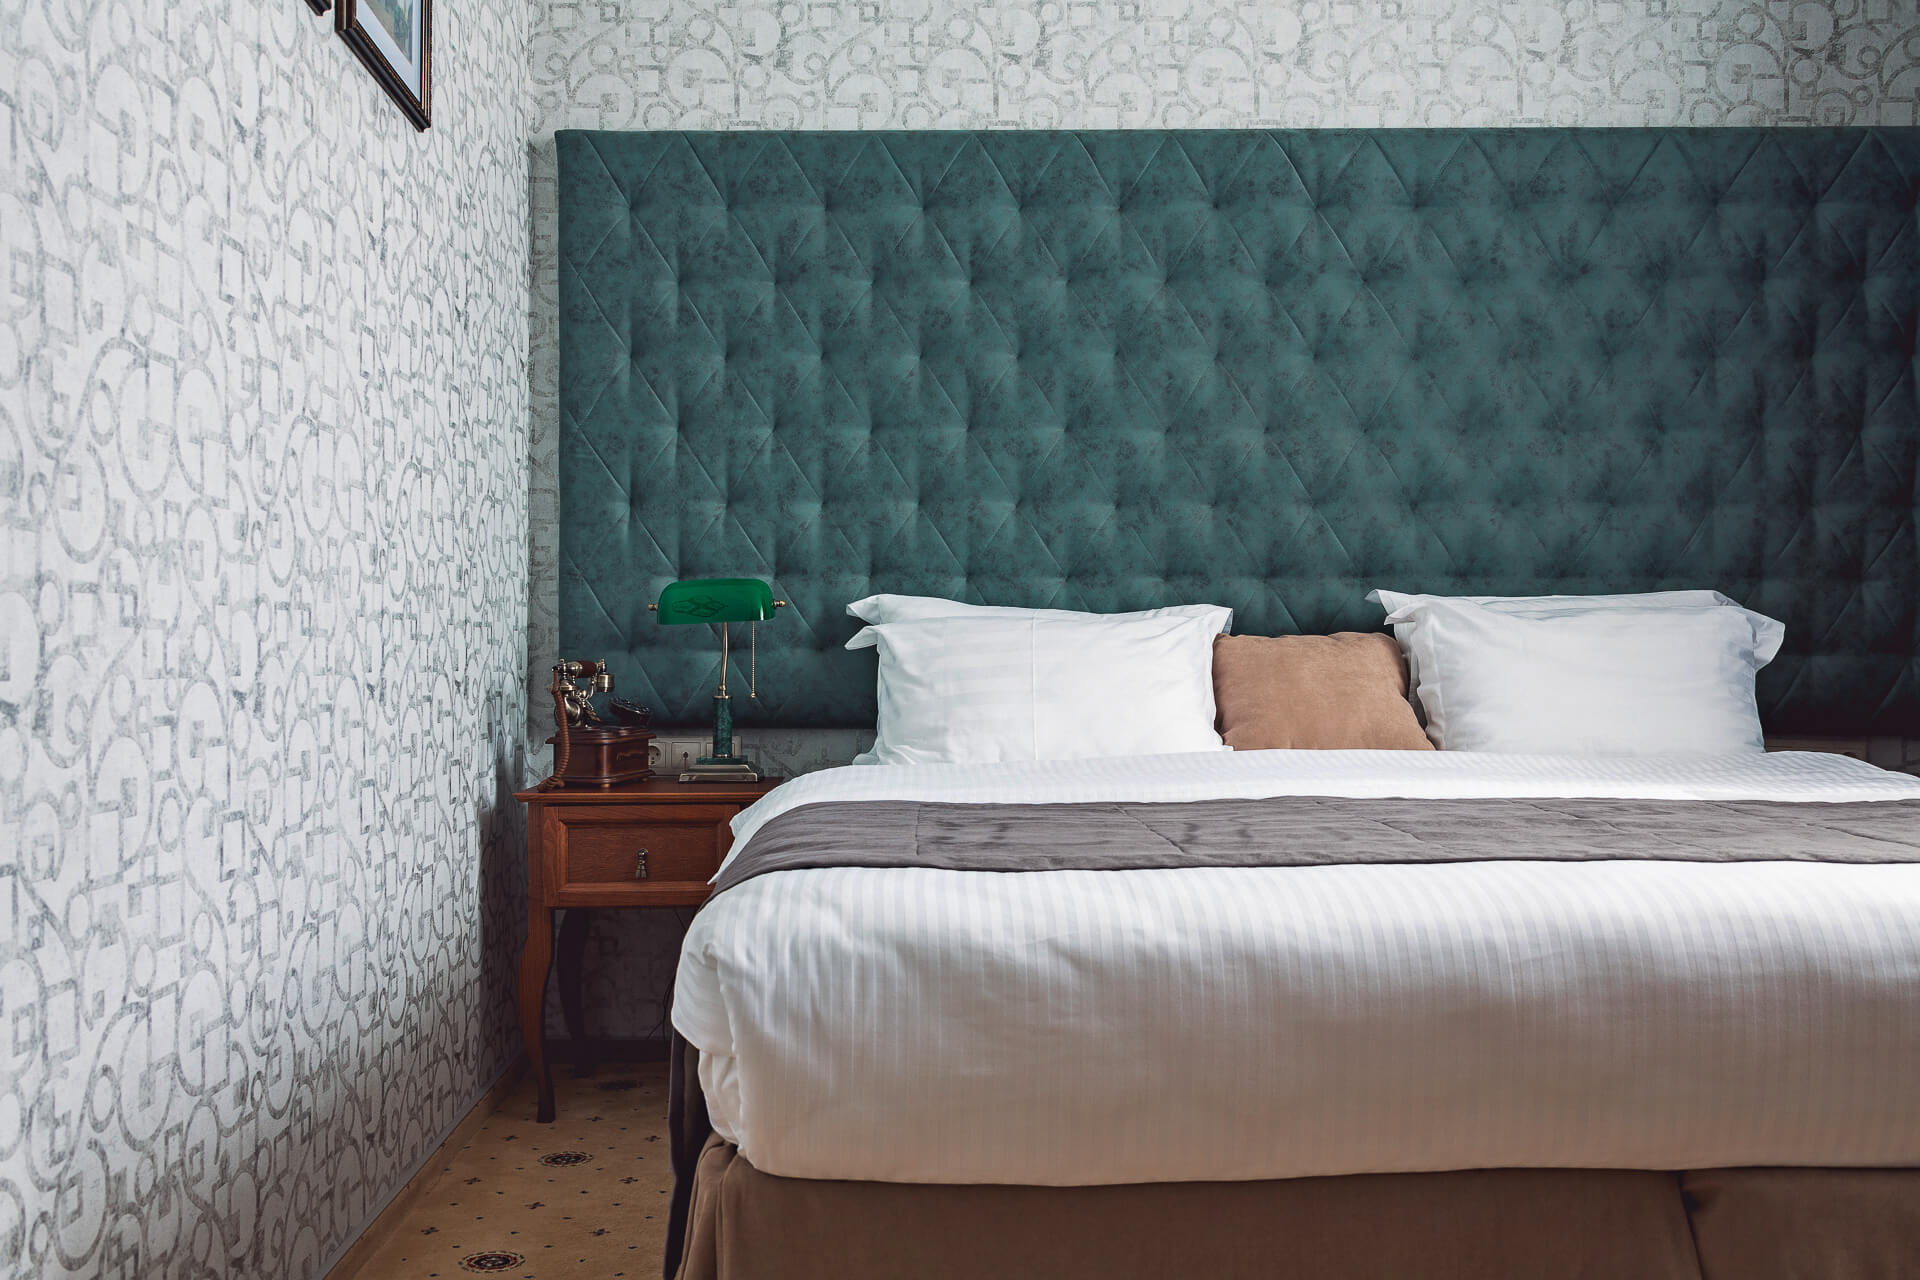 Возле кровать, на прикроватной тумбочке, стоит красивая зеленая лампа.